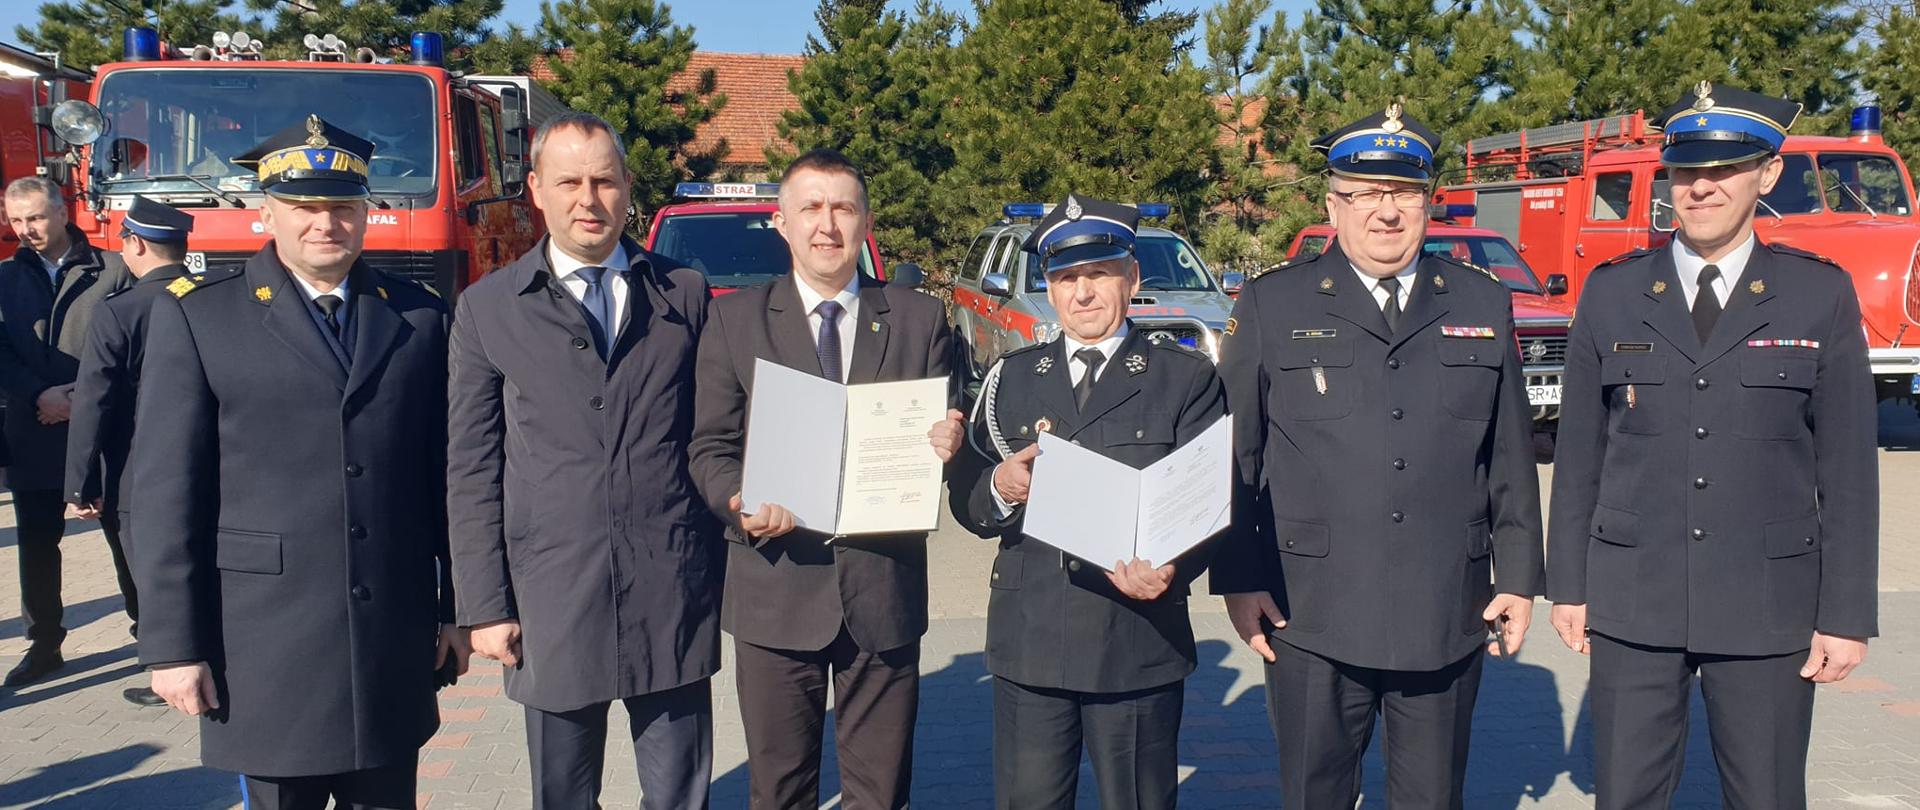 Oficerowie Państwowej Straży Pożarnej wraz z przedstawicielami władz oraz prezesem Ochotniczej Straży Pożarnej w Łazach z promesą na zakup nowego samochodu ratowniczo-gaśniczego dla OSP Łazy.